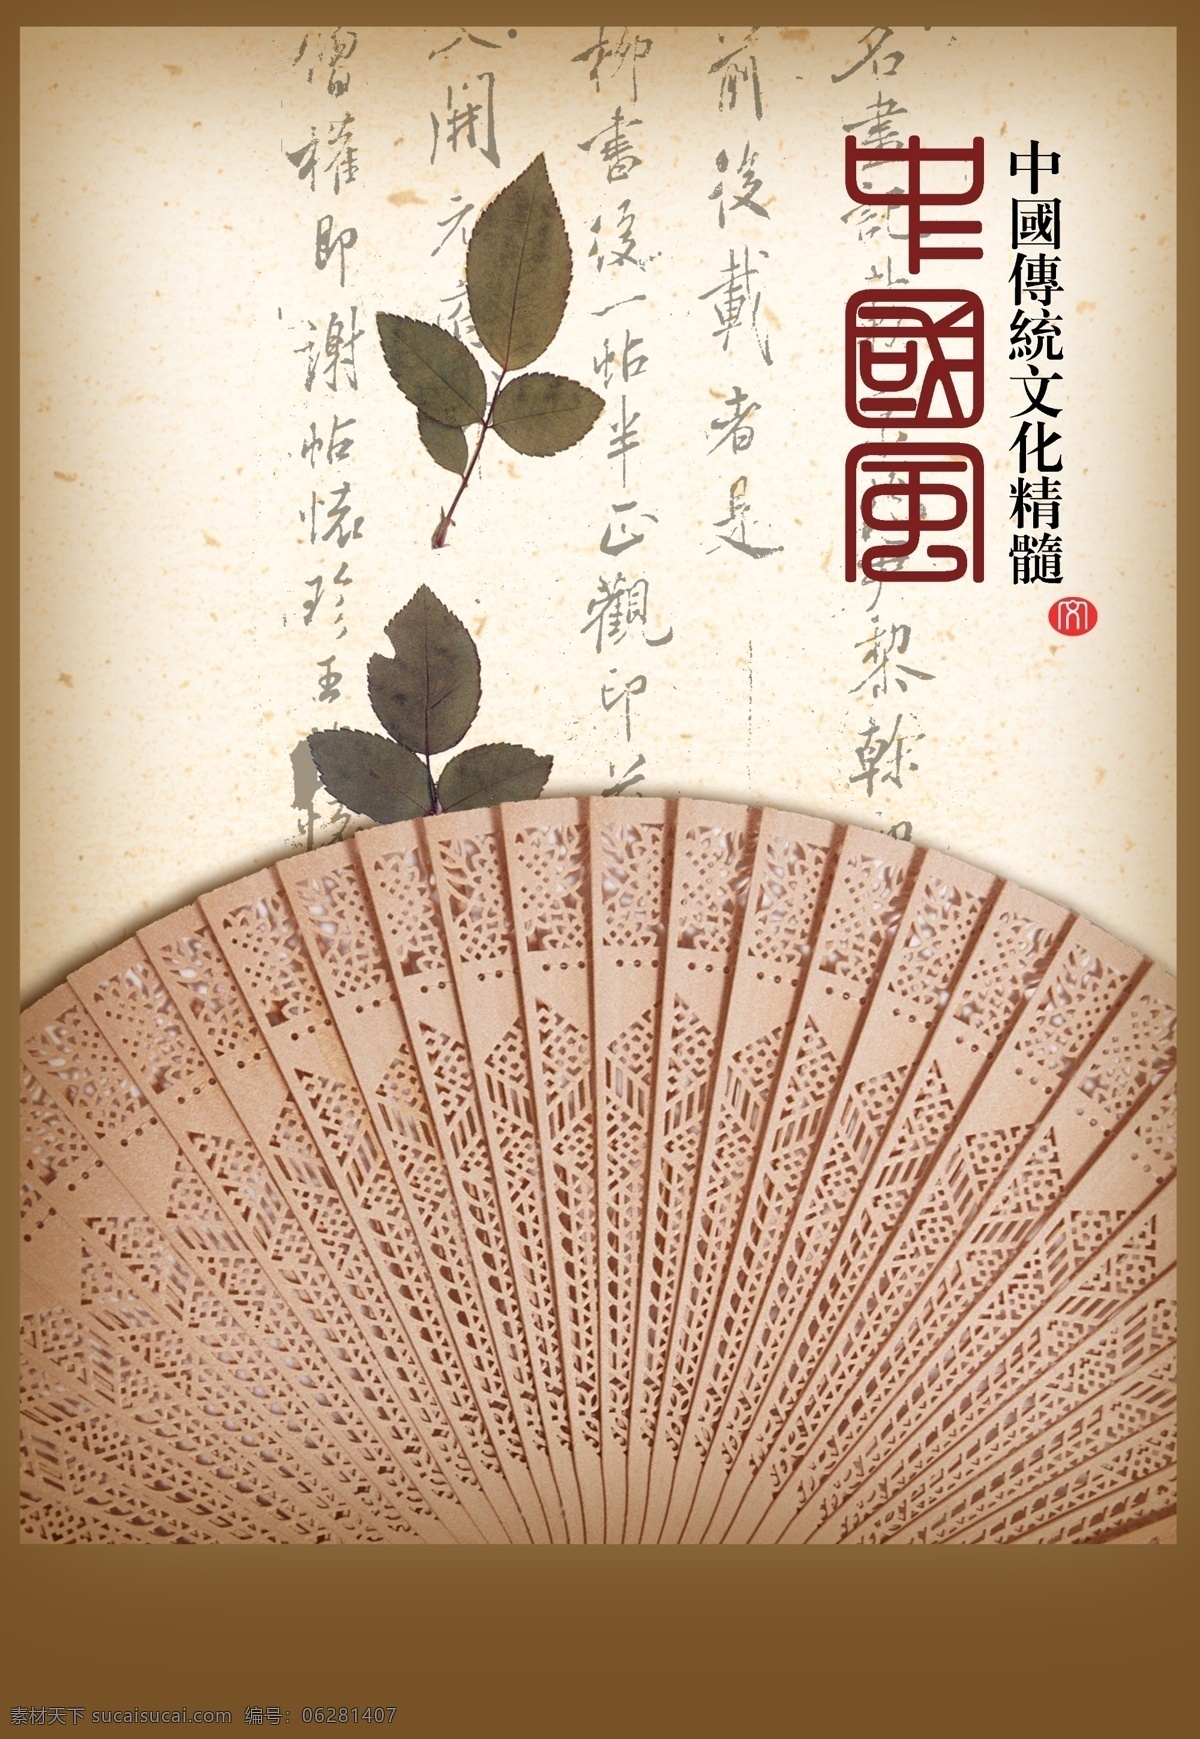 檀香扇 中国 传统文化 精髓 海报 木片 扇子 折扇 檀香 檀香木